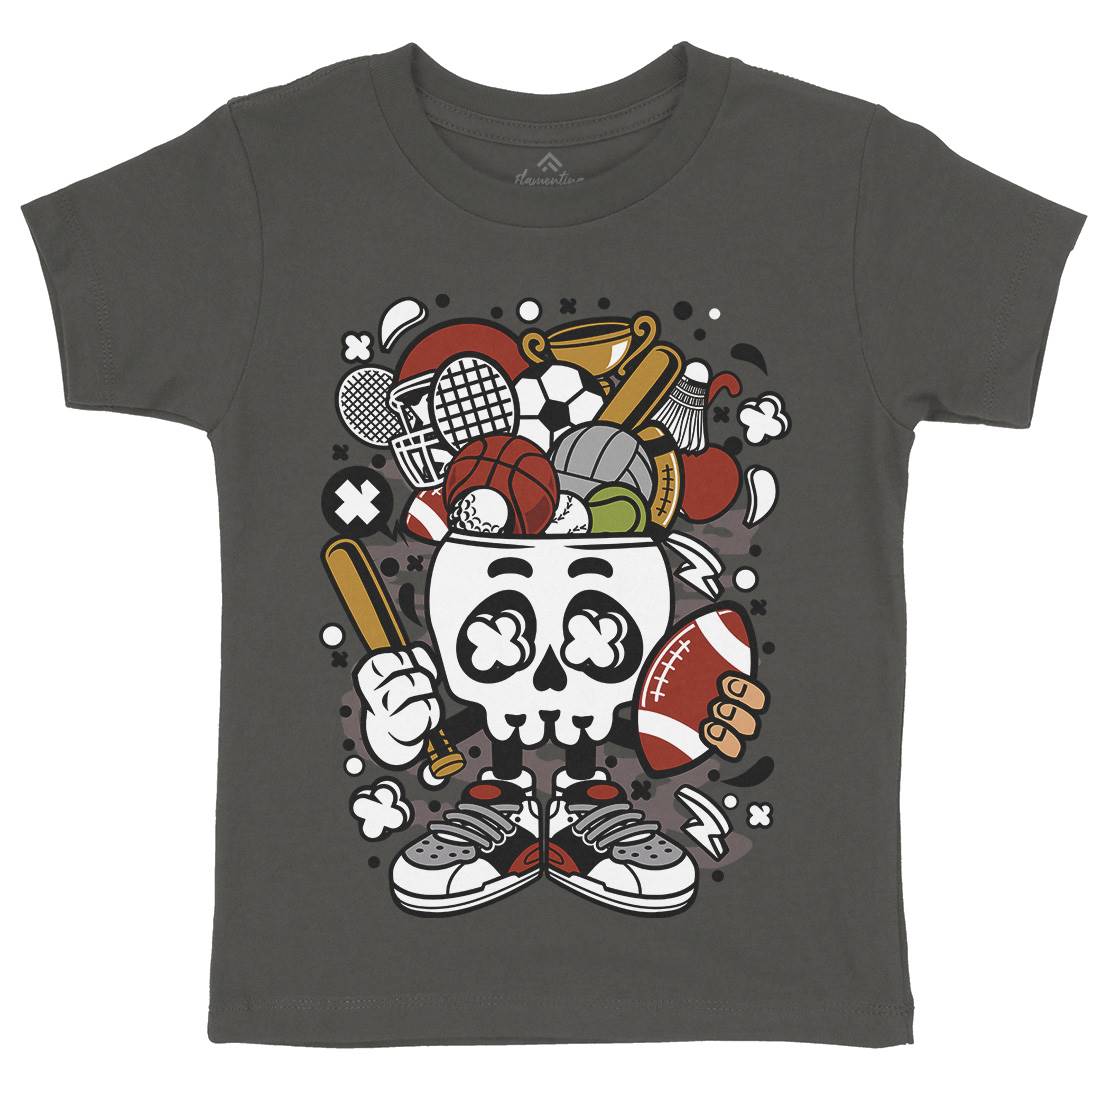 Sports Skull Head Kids Organic Crew Neck T-Shirt Sport C666